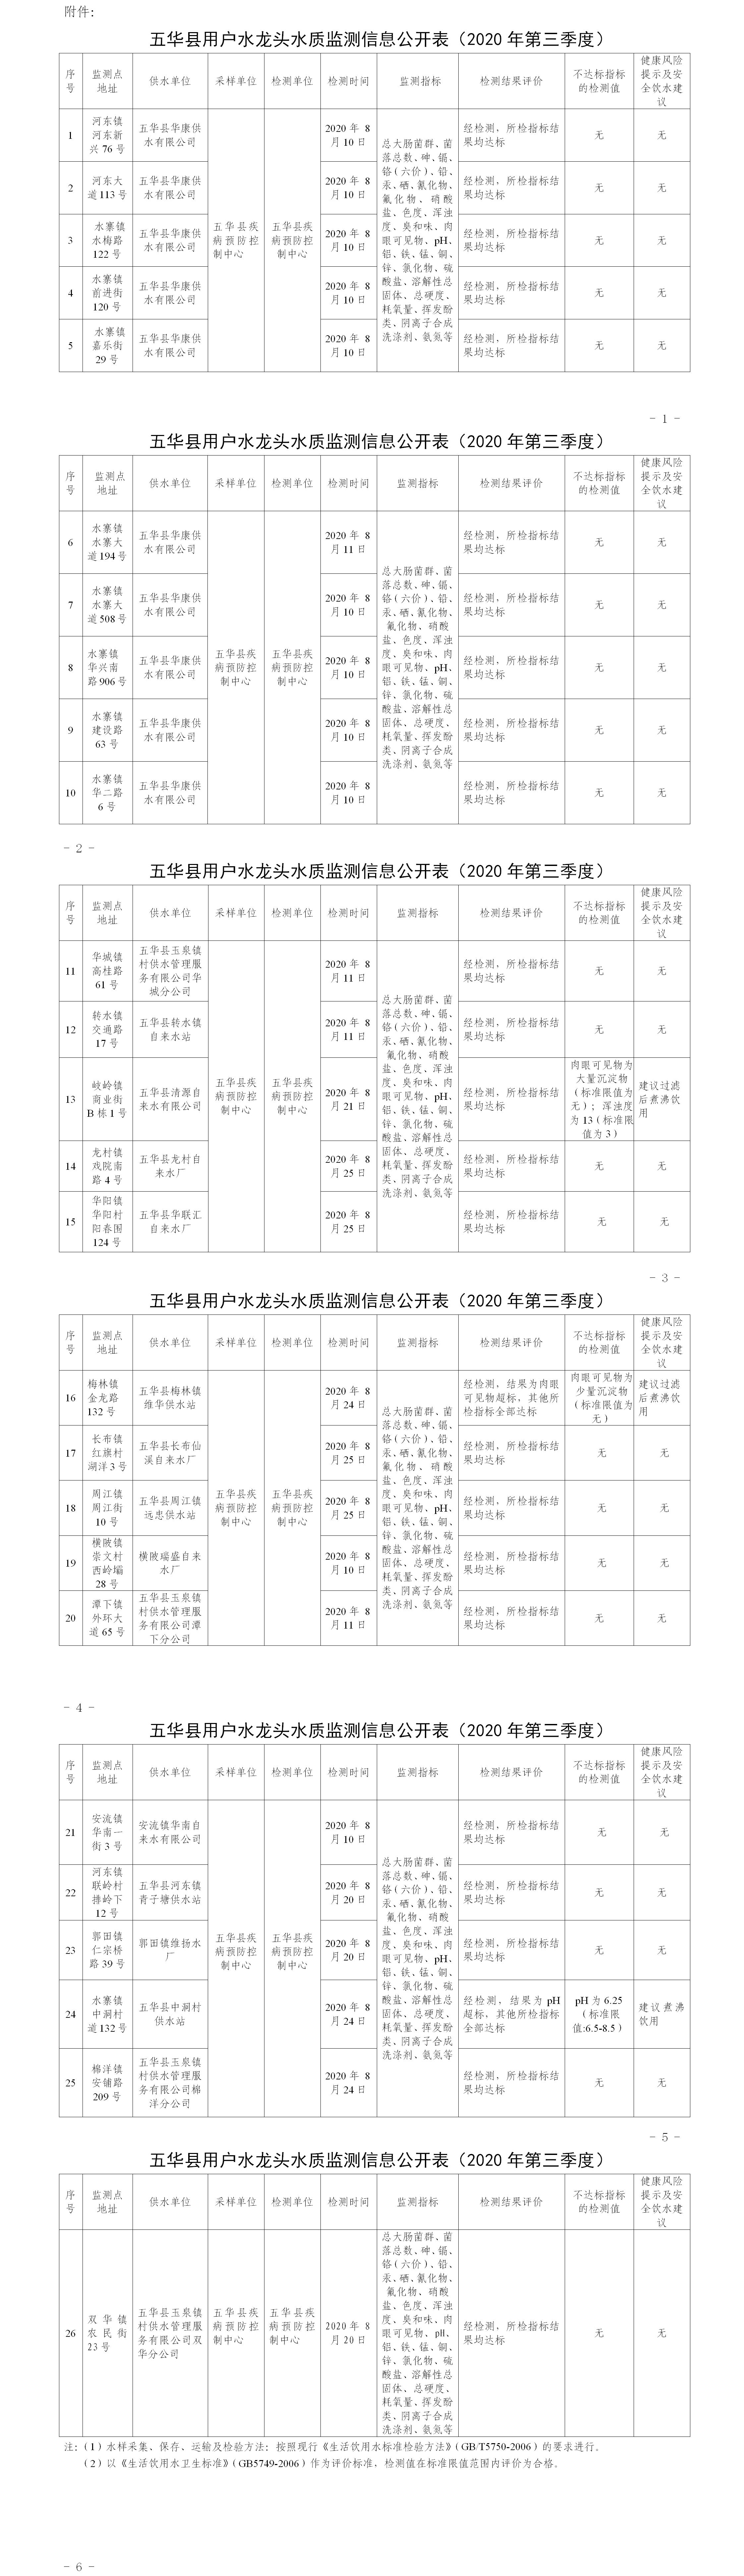 关于五华县2020年第三季度用户水龙头水质监测结果的报告(1).jpg